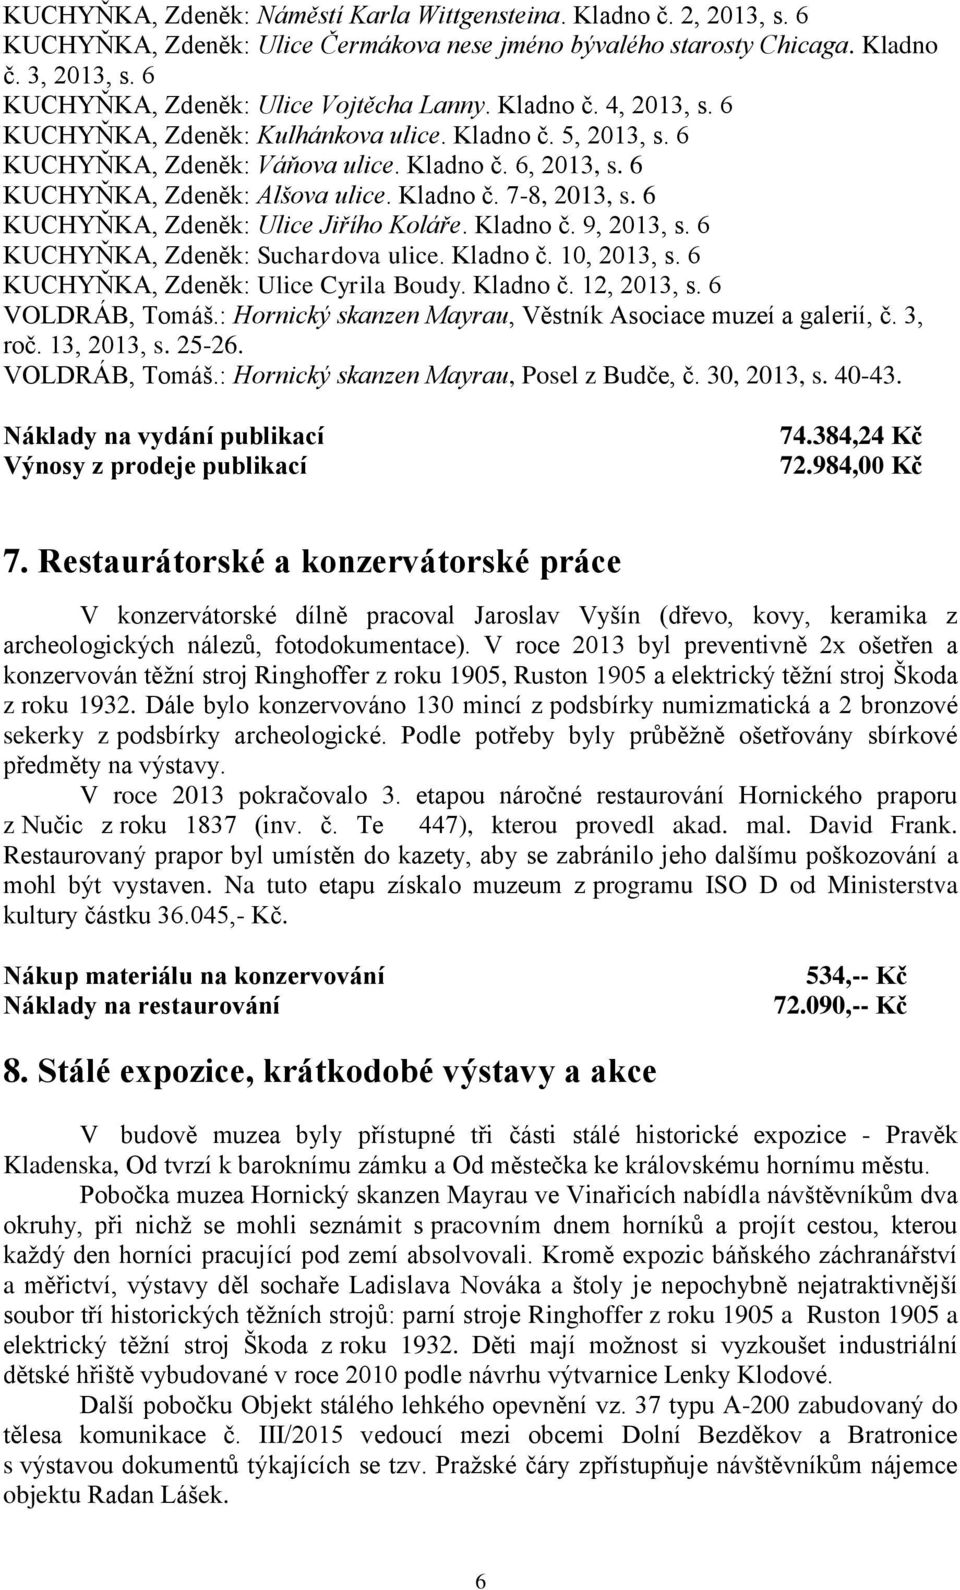 6 KUCHYŇKA, Zdeněk: Alšova ulice. Kladno č. 7-8, 2013, s. 6 KUCHYŇKA, Zdeněk: Ulice Jiřího Koláře. Kladno č. 9, 2013, s. 6 KUCHYŇKA, Zdeněk: Suchardova ulice. Kladno č. 10, 2013, s.